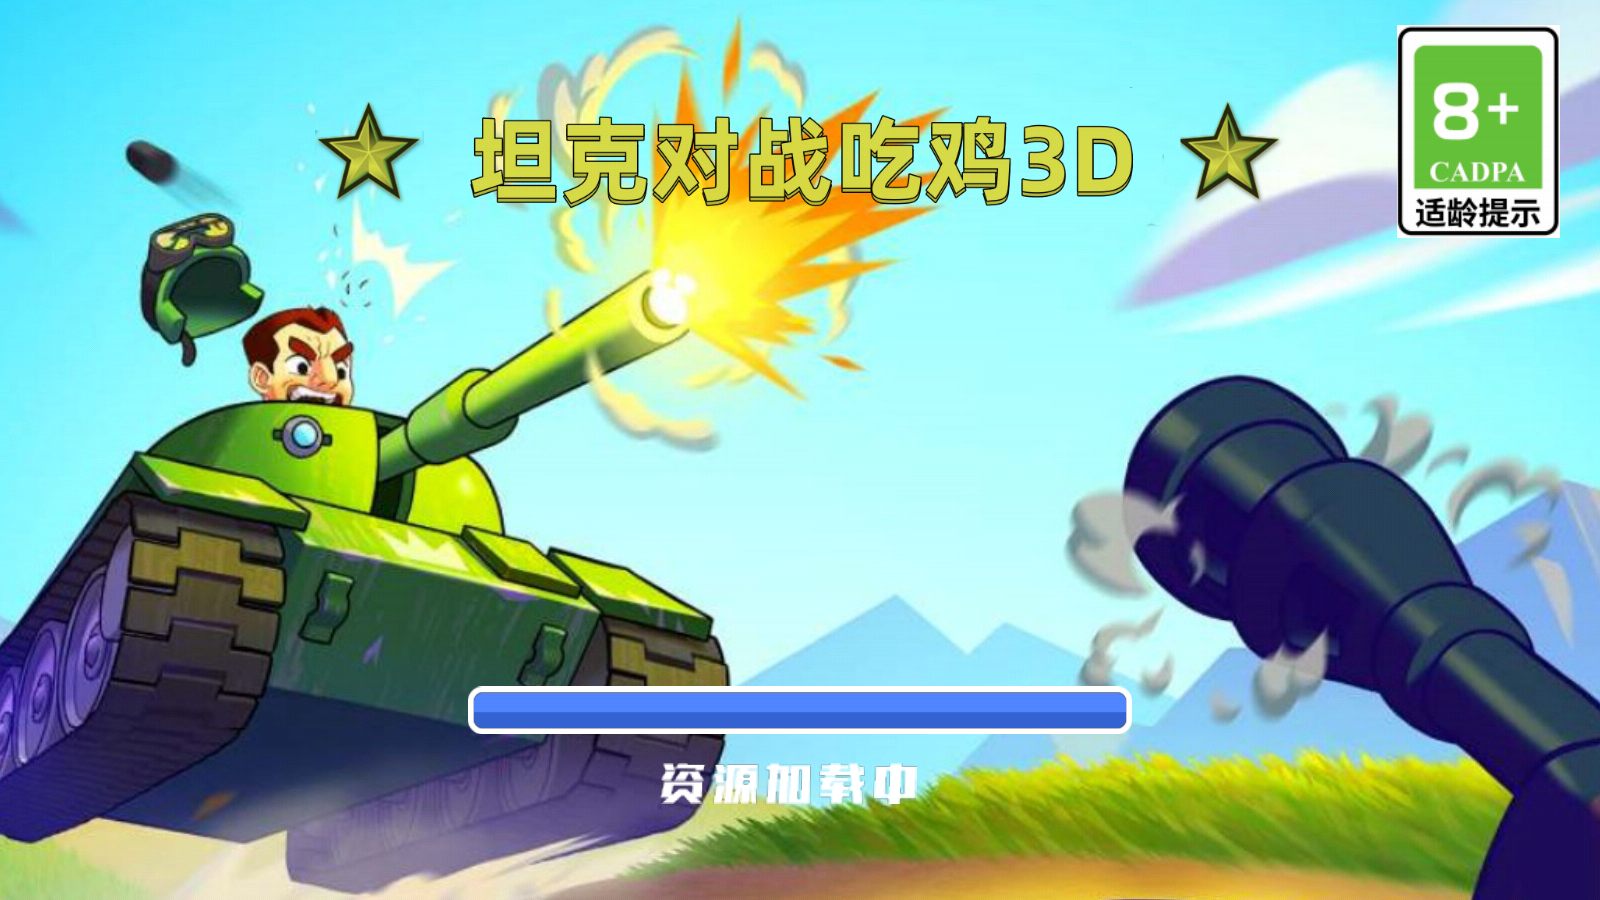 坦克对战吃鸡3D游戏截图1